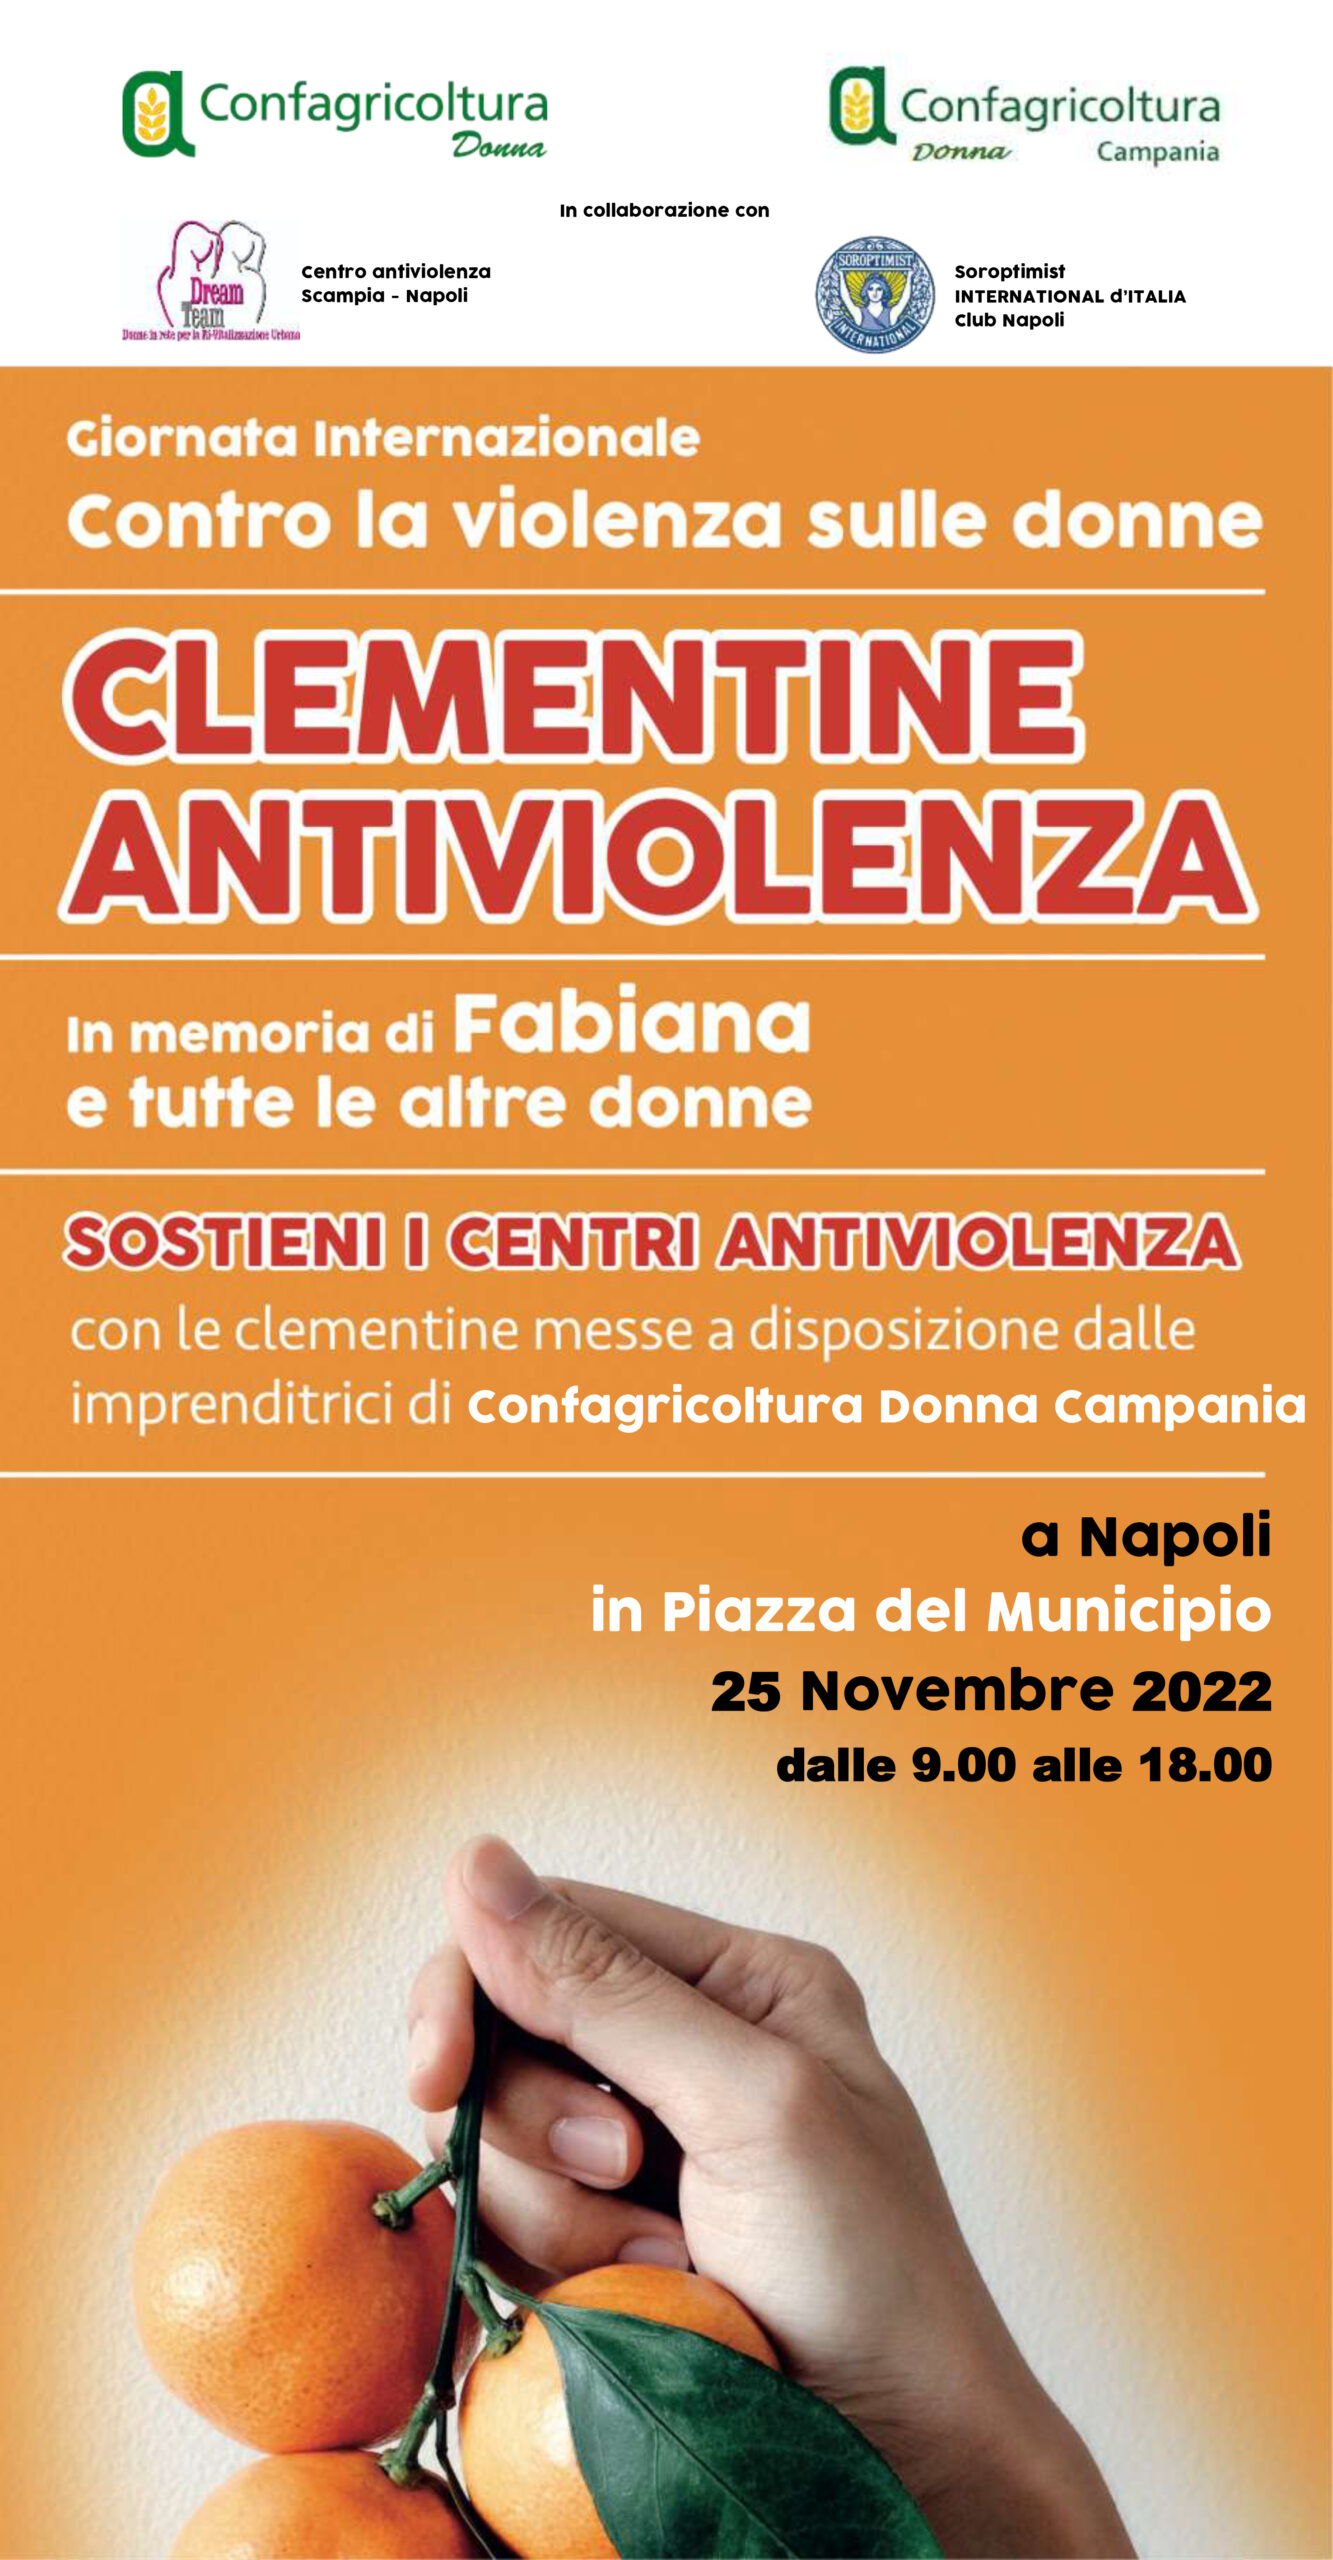 Campania: Confagricoltura Donna, 25 Novembre clementine antiviolenza